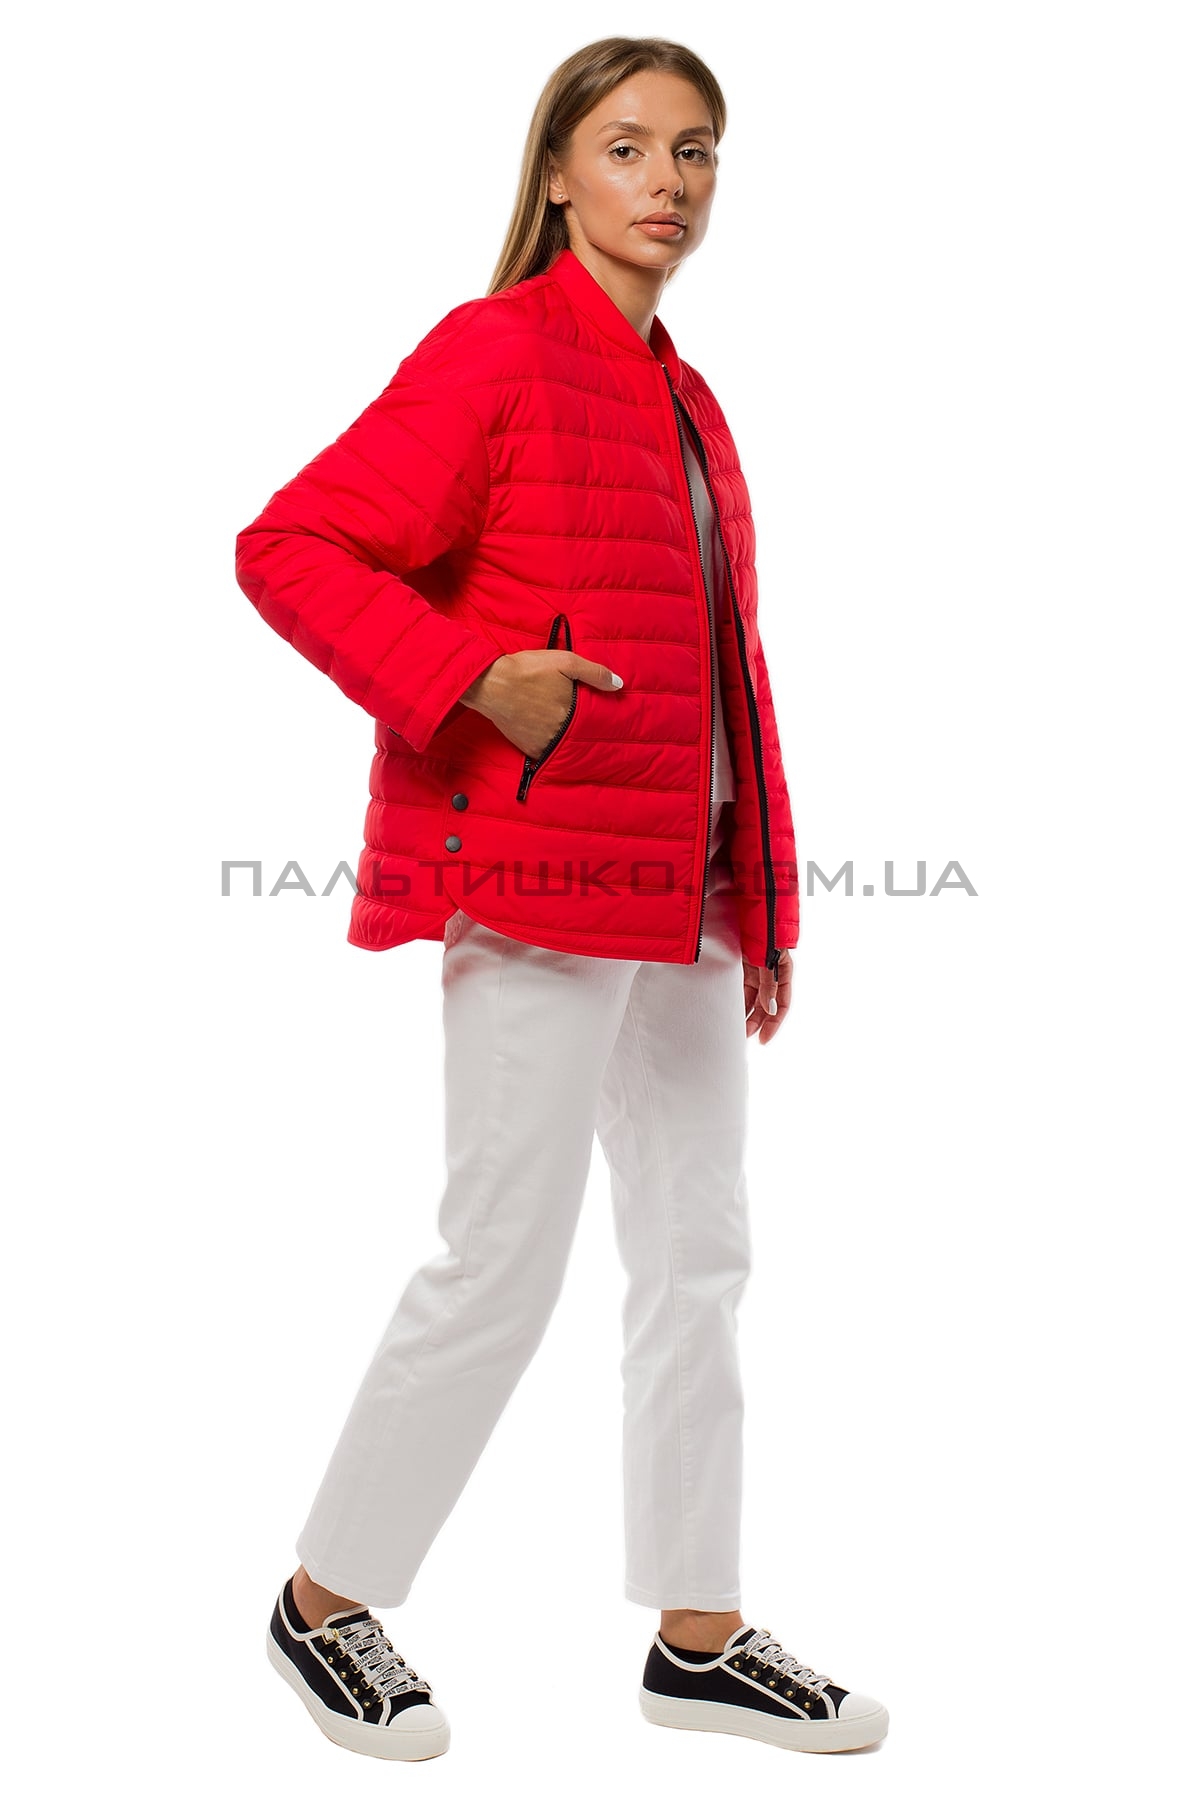  Жіноча куртка червона